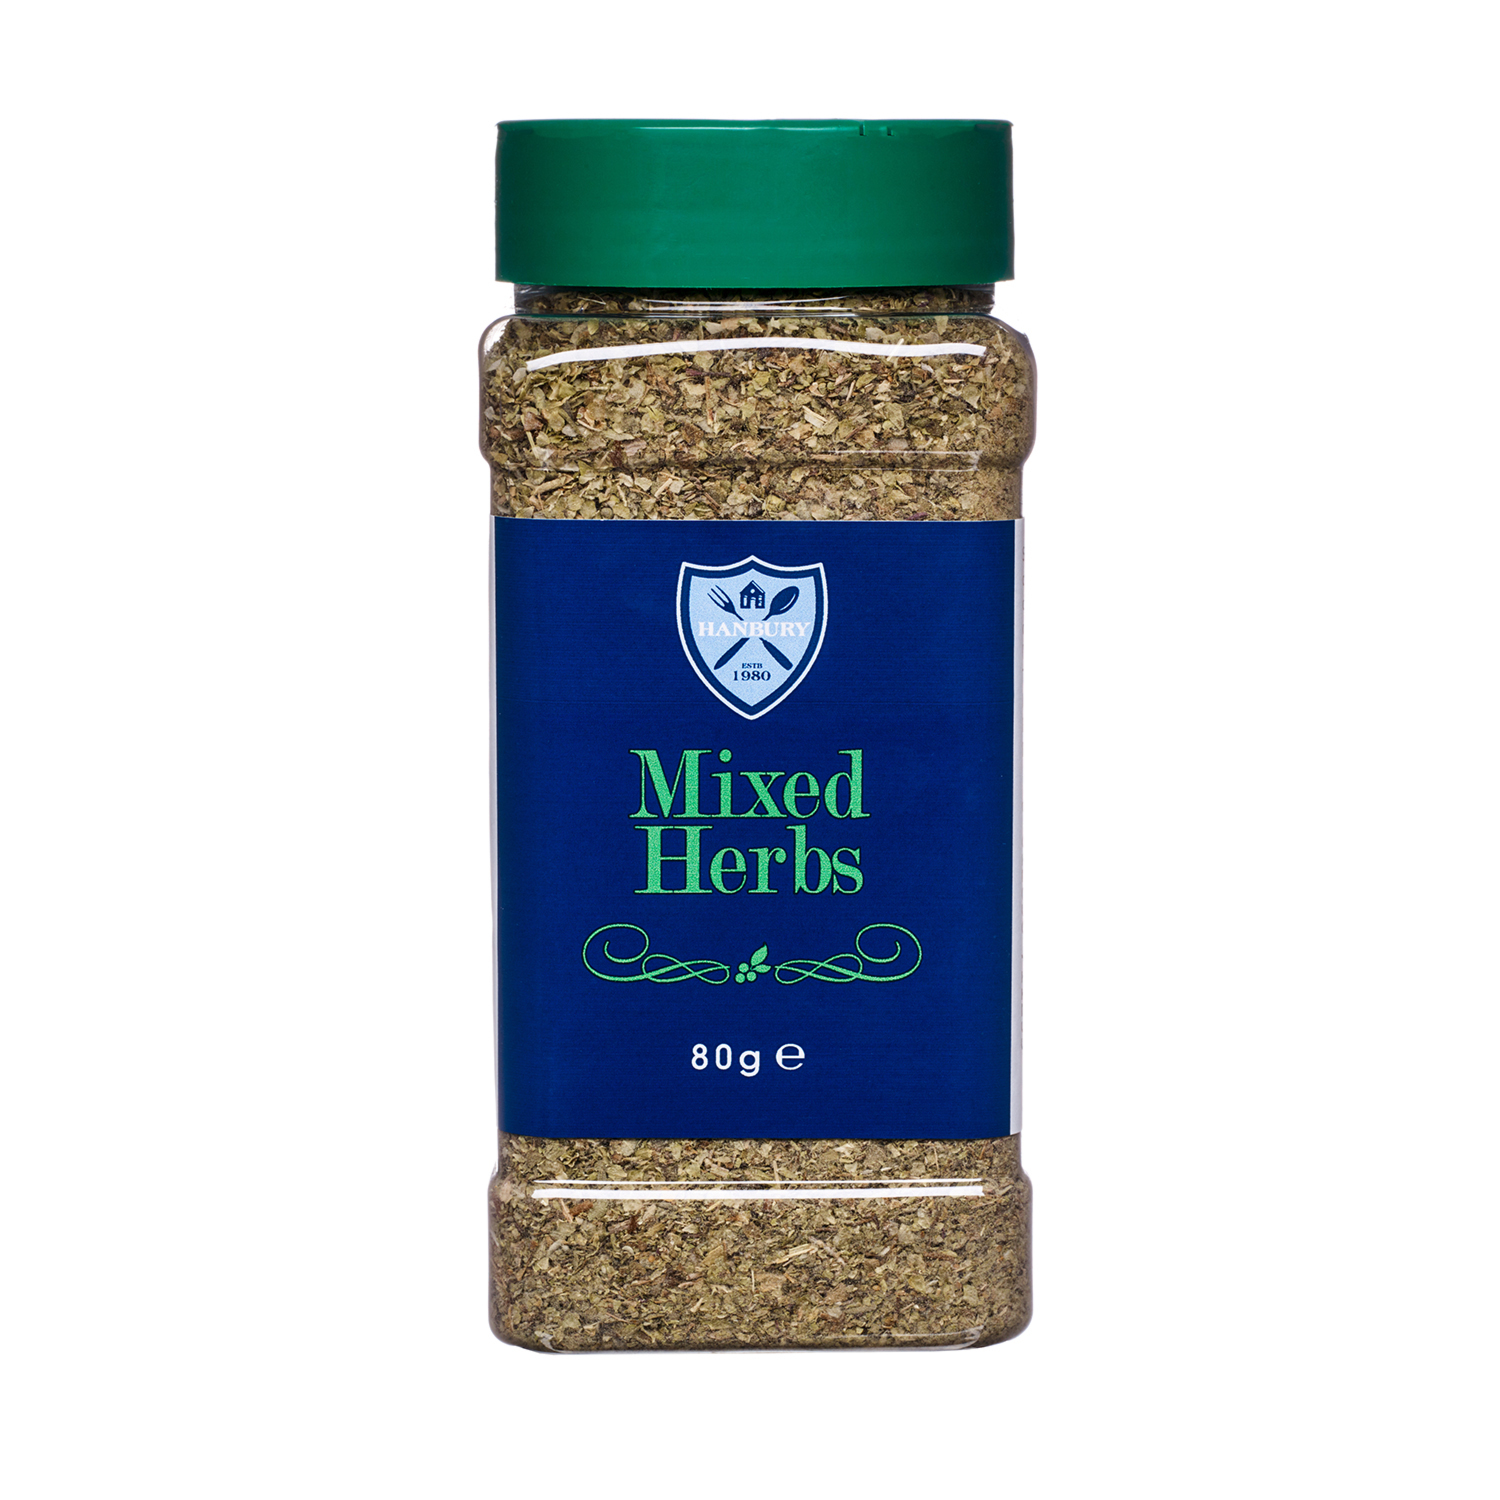 Mixed Herbs Image